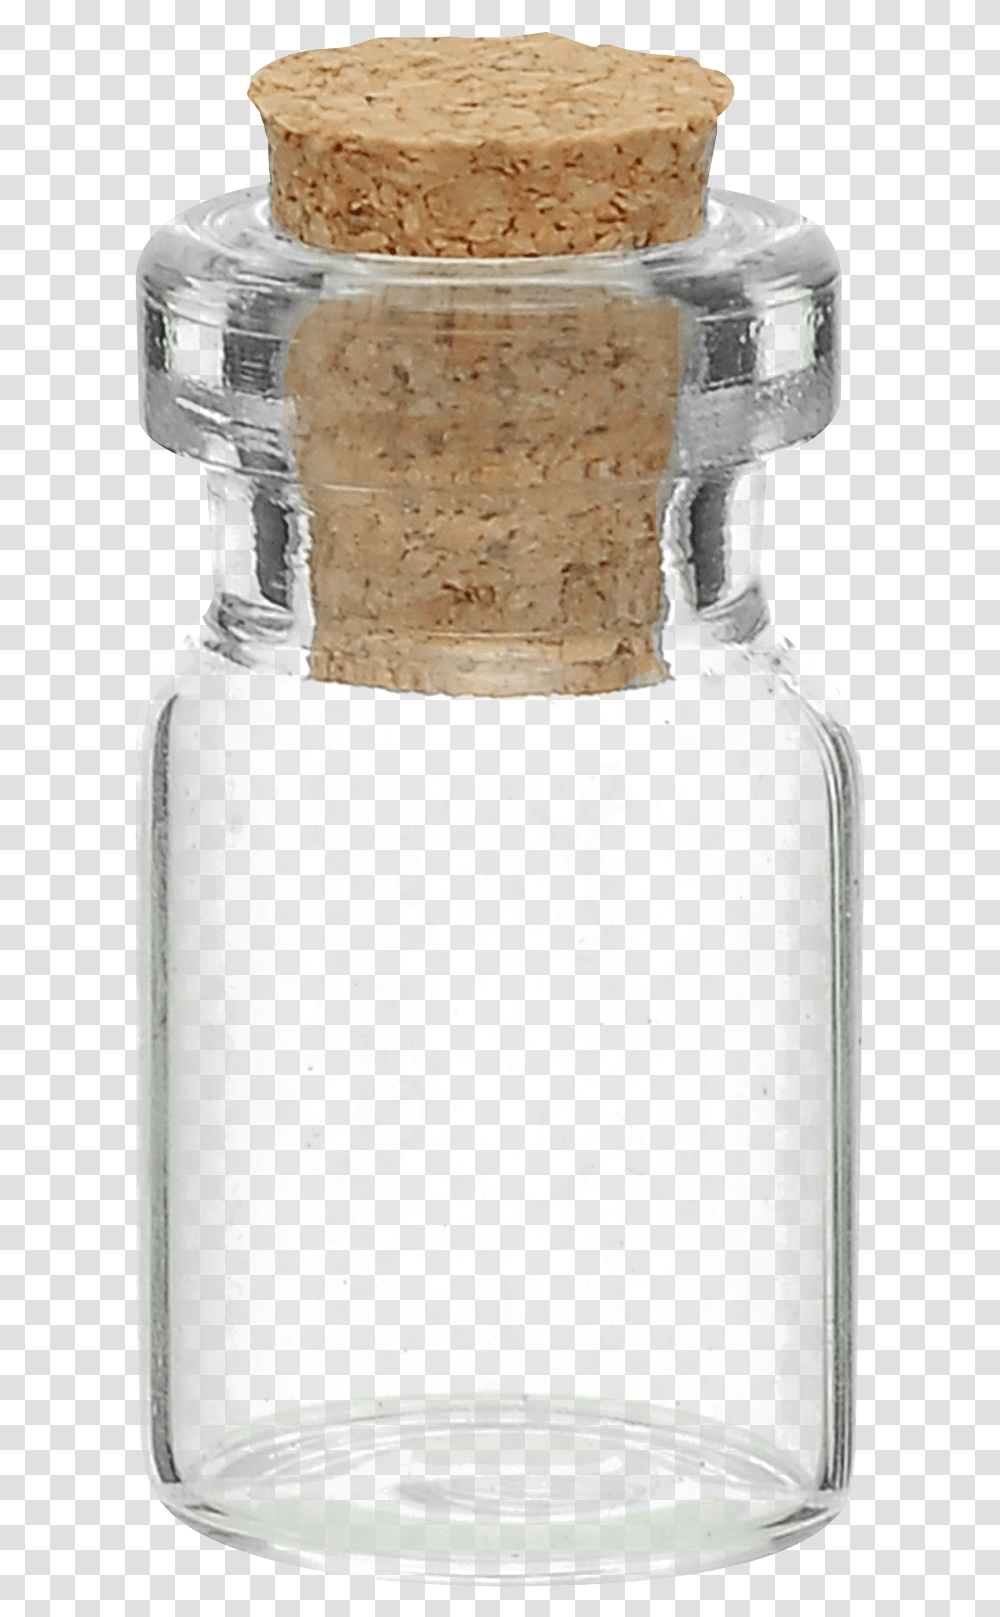 Coca Cola Image Pngpix Glass Bottle, Milk, Beverage, Drink, Jar Transparent Png